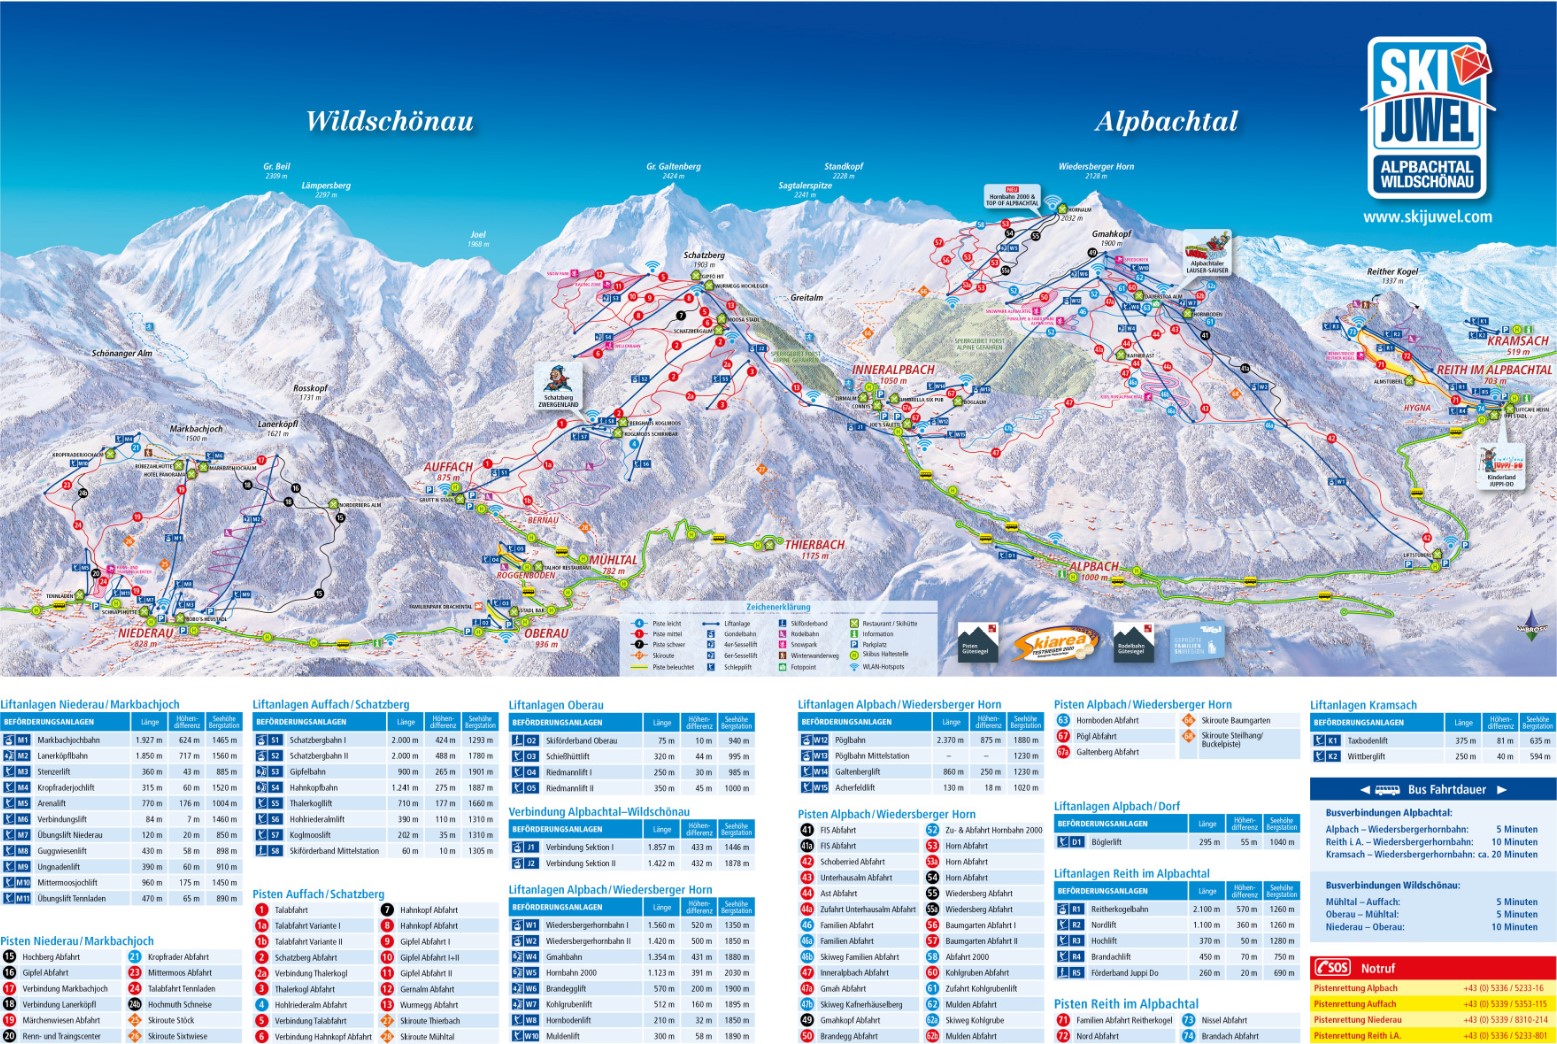 Trail Map Ski Juwel Alpbachtal Wildschoenau Ski Resort Austria